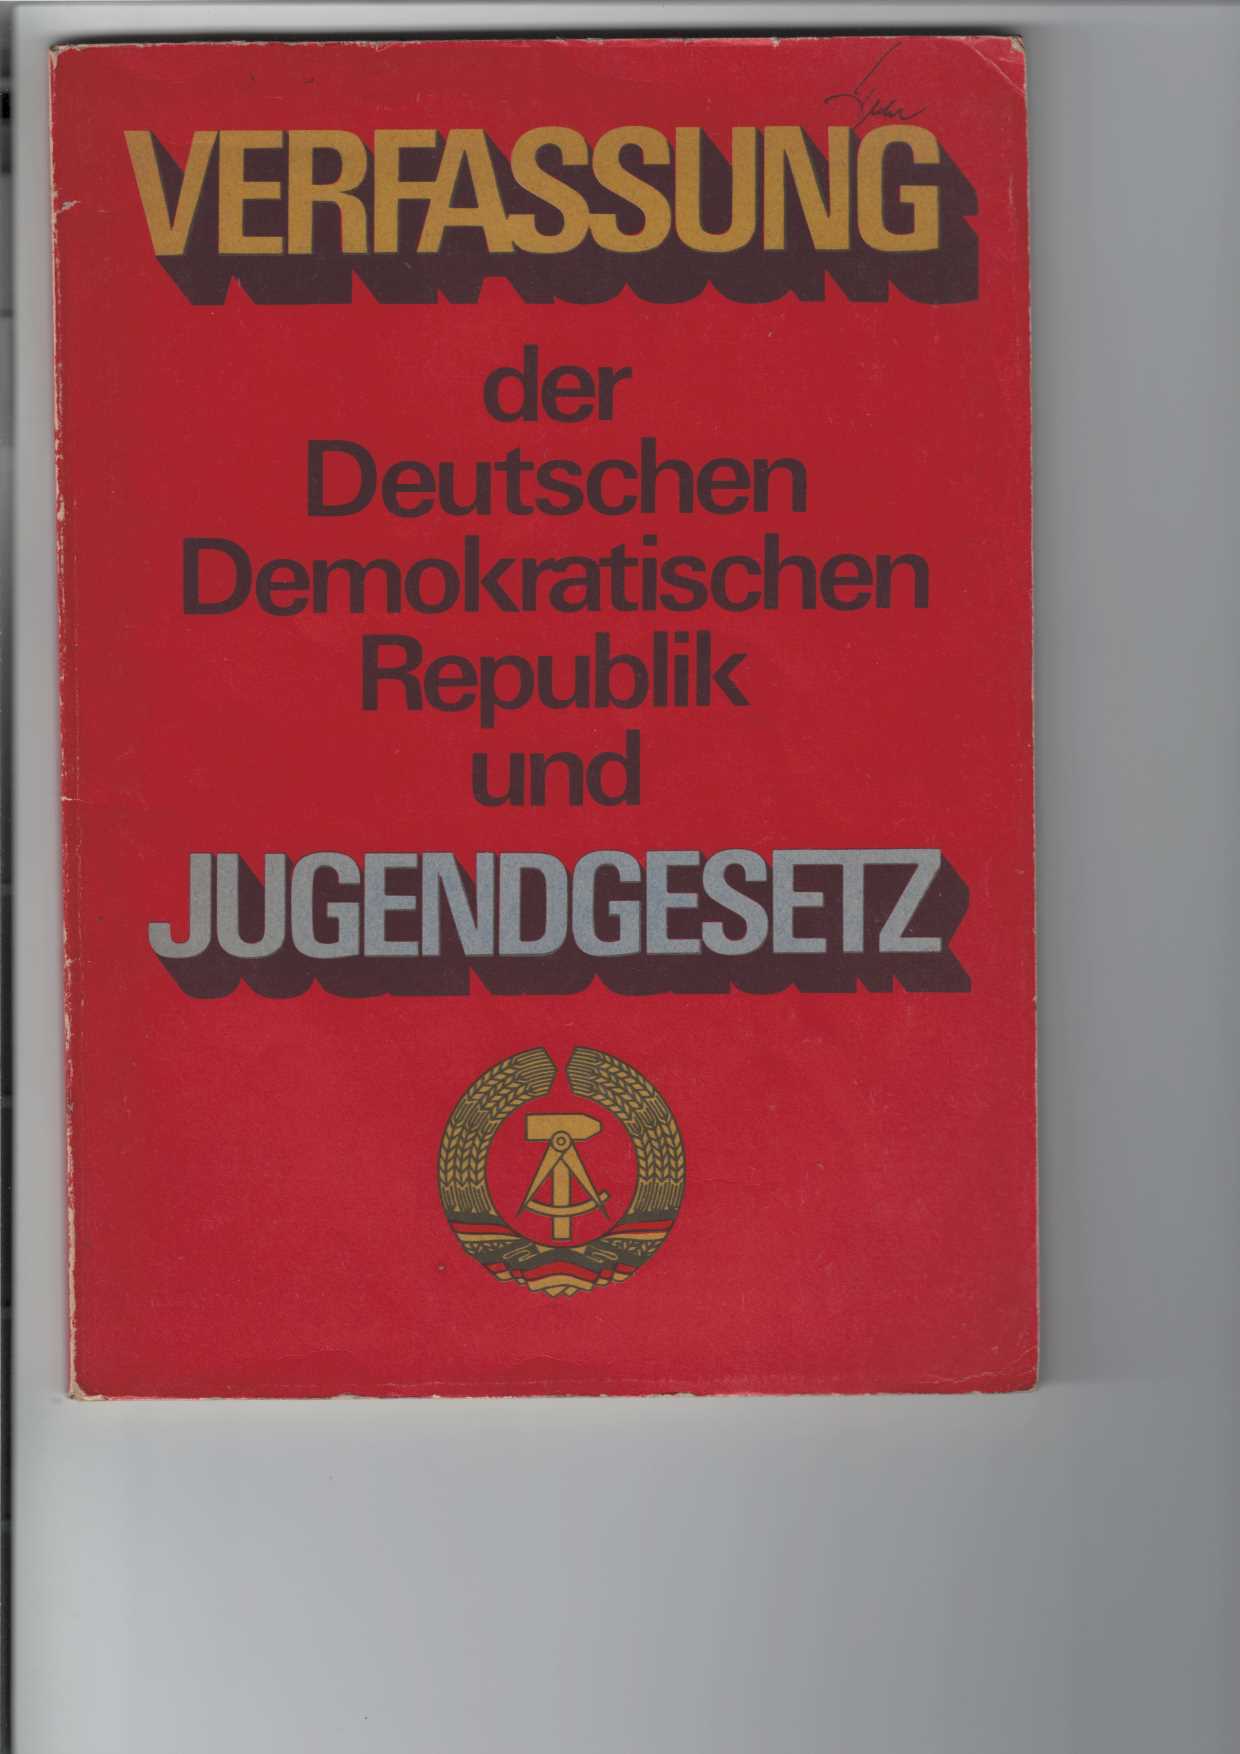   Verfassung der Deutschen Demokratischen Republik und Jugendgesetz. 